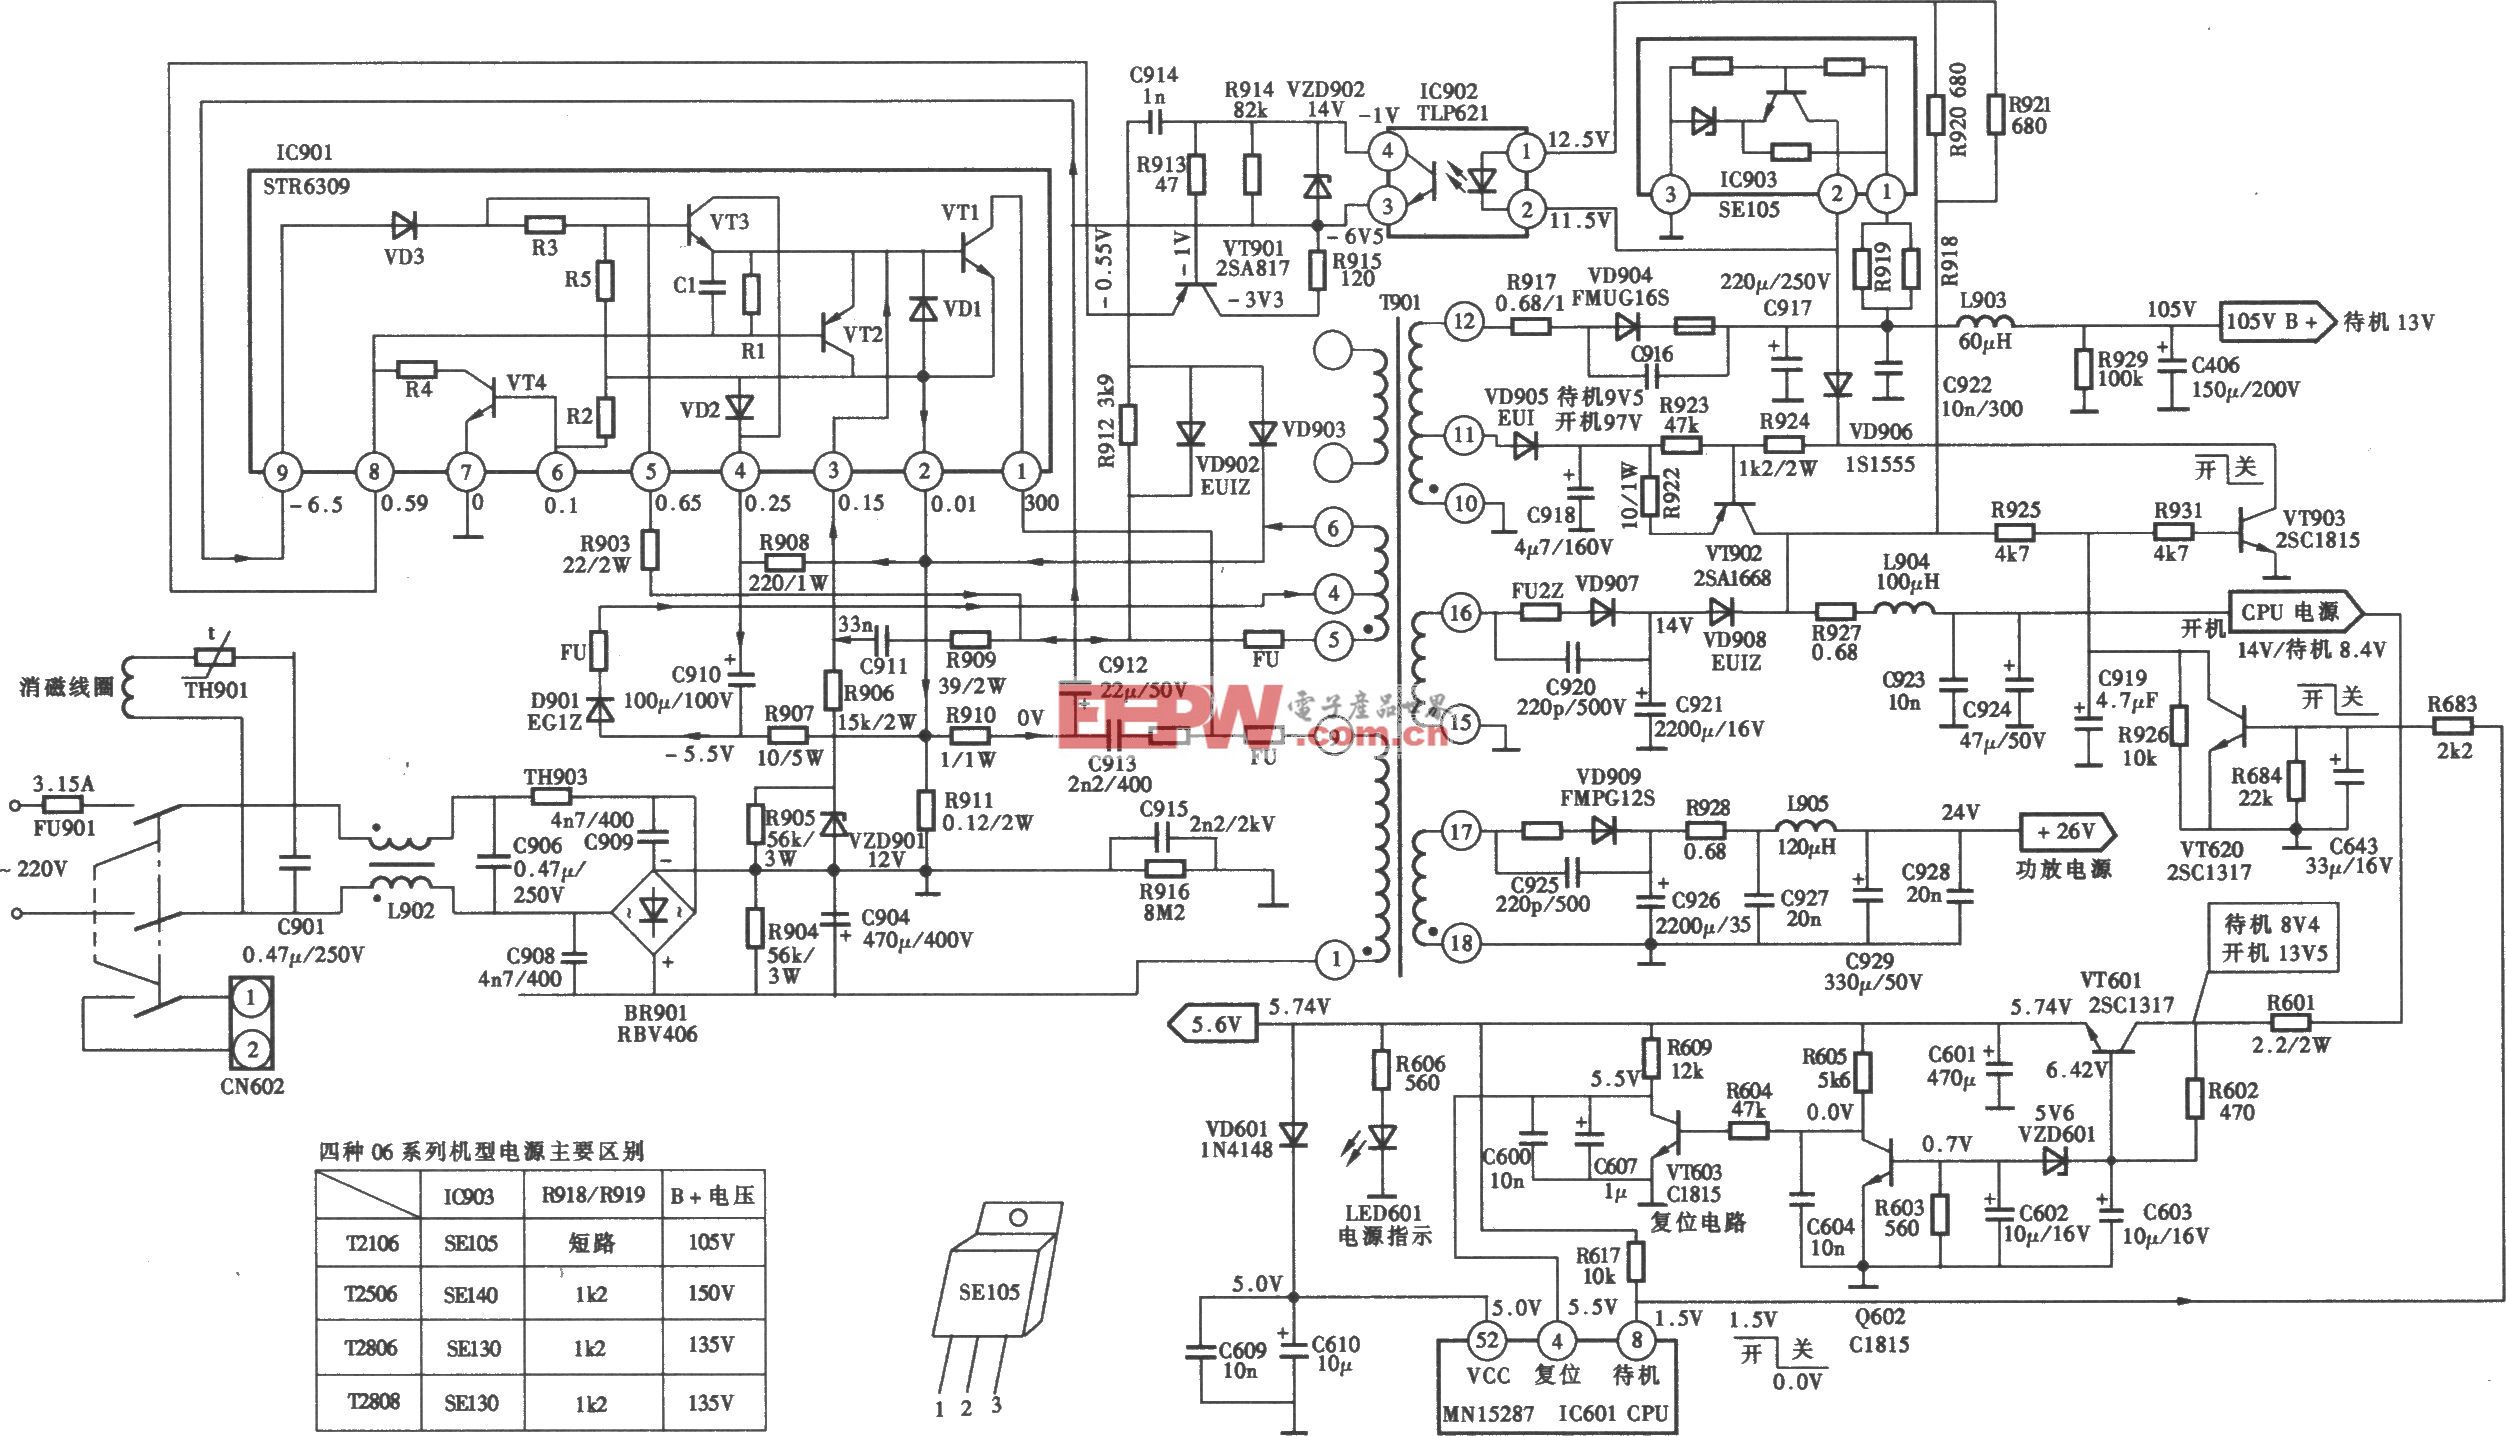 康佳T2106型(“06”系列)彩电开关电源 (STR-S6309) 电路